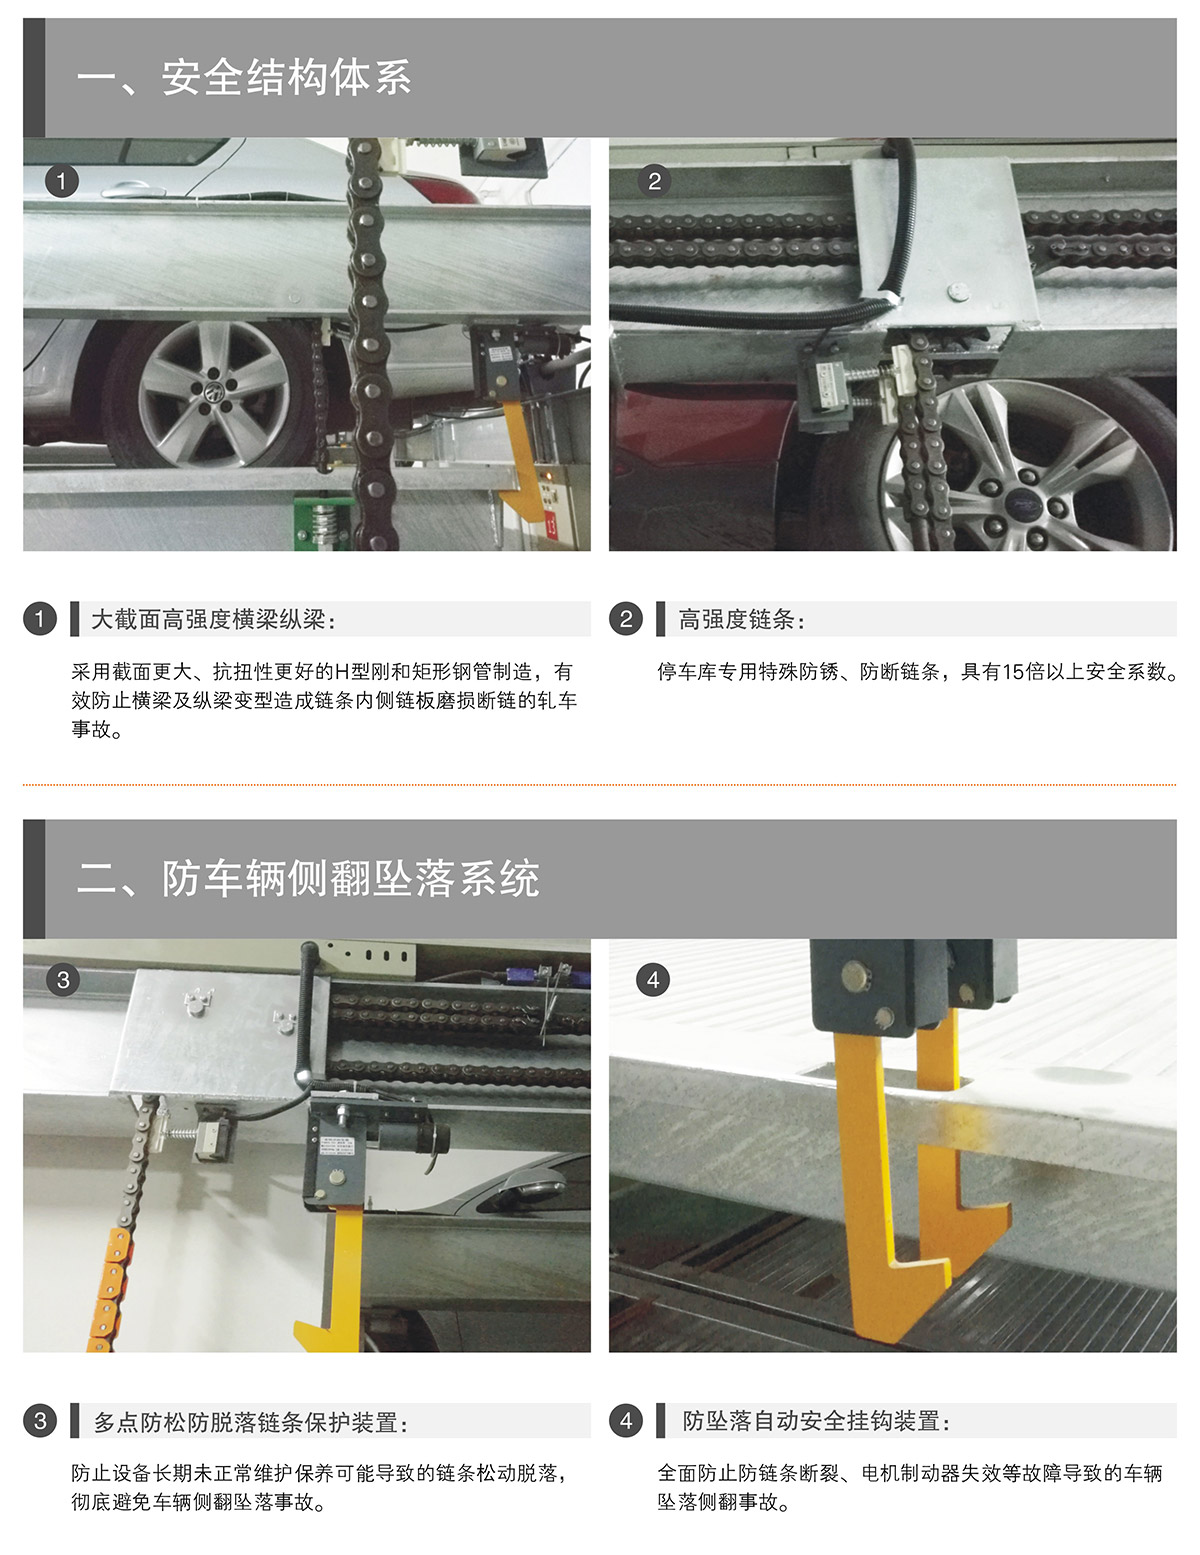 机械车位PSH升降横移机械停车设备安全结构体系.jpg